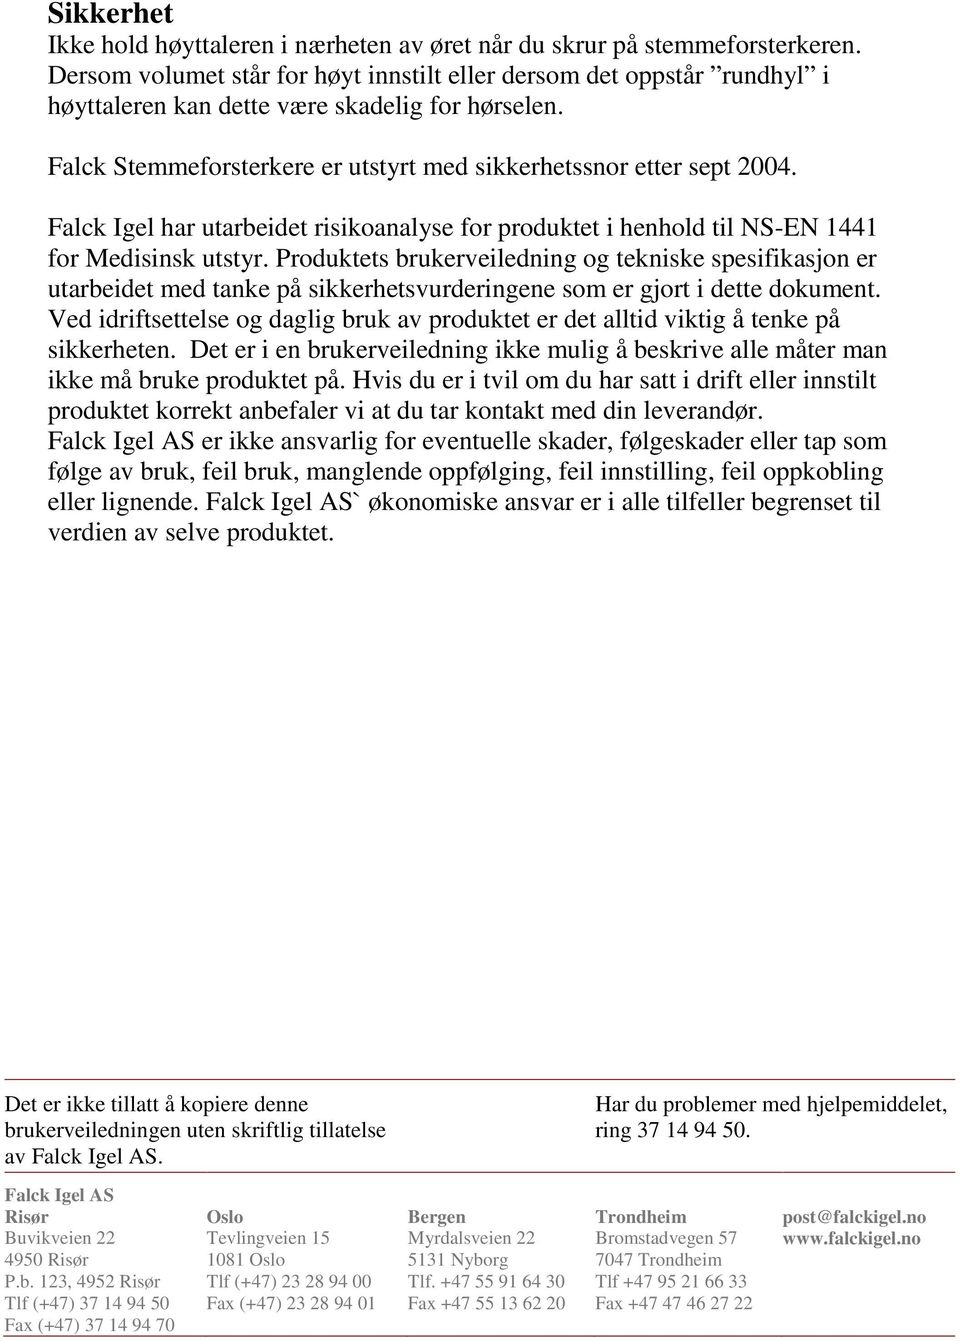 Falck Igel har utarbeidet risikoanalyse for produktet i henhold til NS-EN 1441 for Medisinsk utstyr.